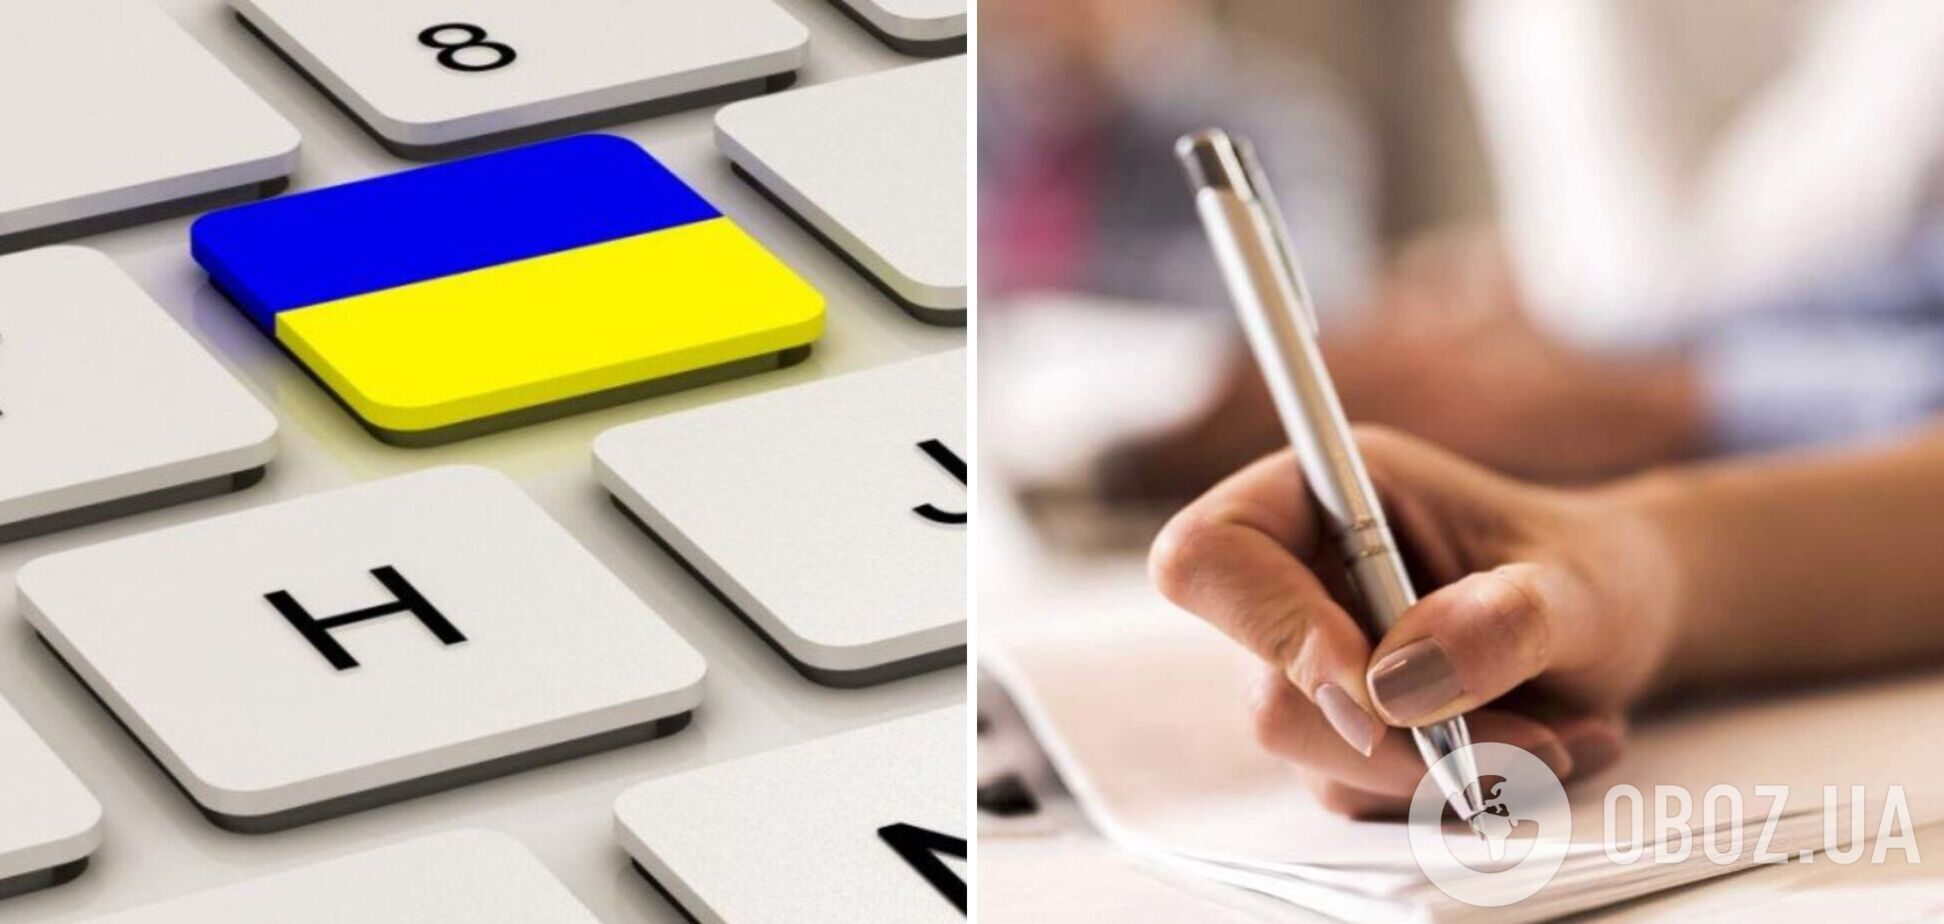 Сбой системы и 'детские' задачи: в Украине тестирование чиновников на знание языка началось с конфуза